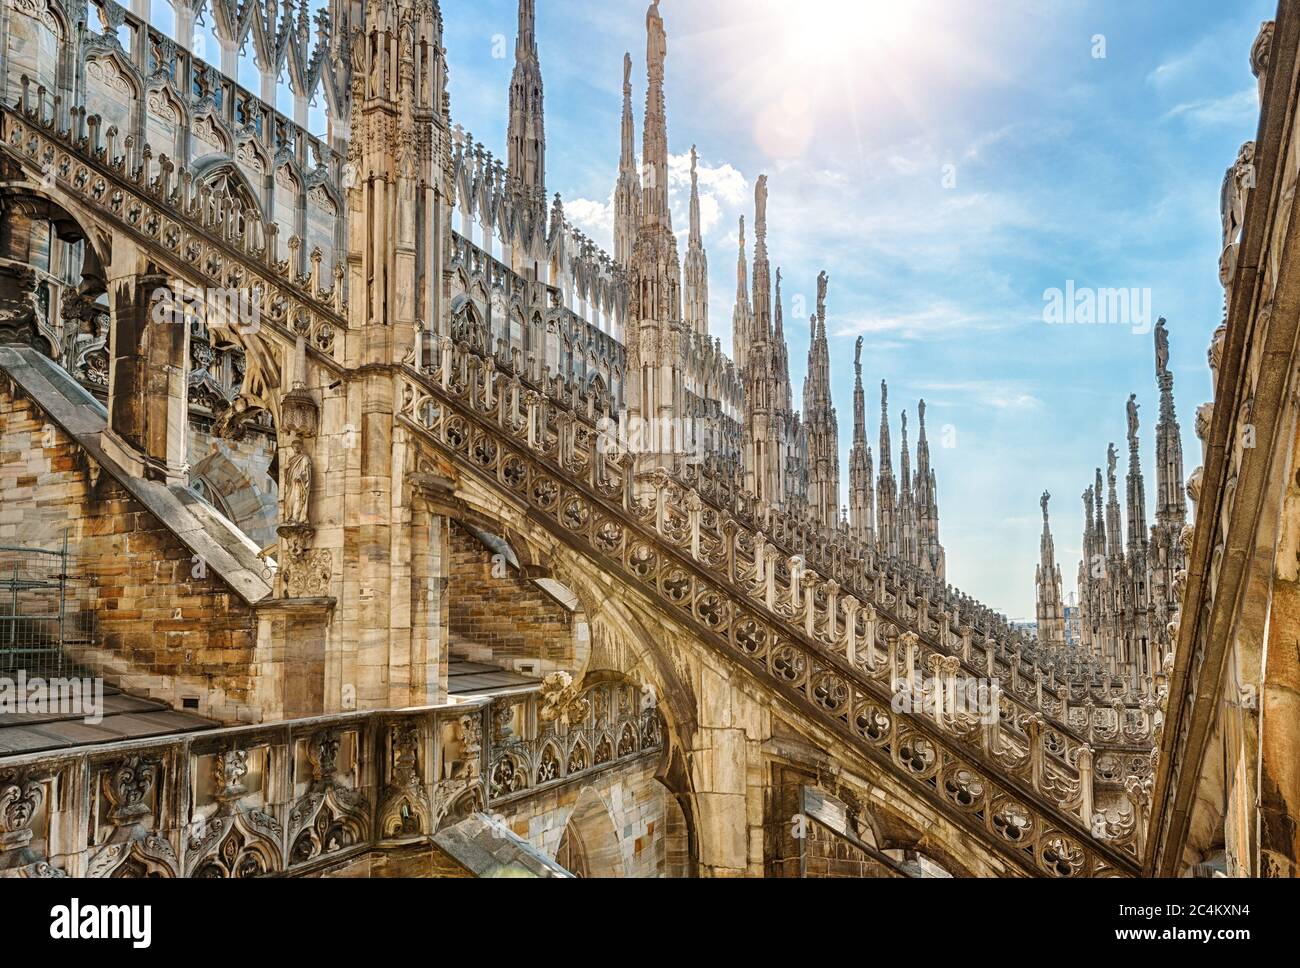 Mailänder Dom oder Duomo di Milano an sonnigen Tagen, Italien. Schöne Aussicht auf das Luxusdach. Der berühmte Mailänder Dom ist ein Wahrzeichen der Stadt. Kunstvoller gotischer Bogen Stockfoto